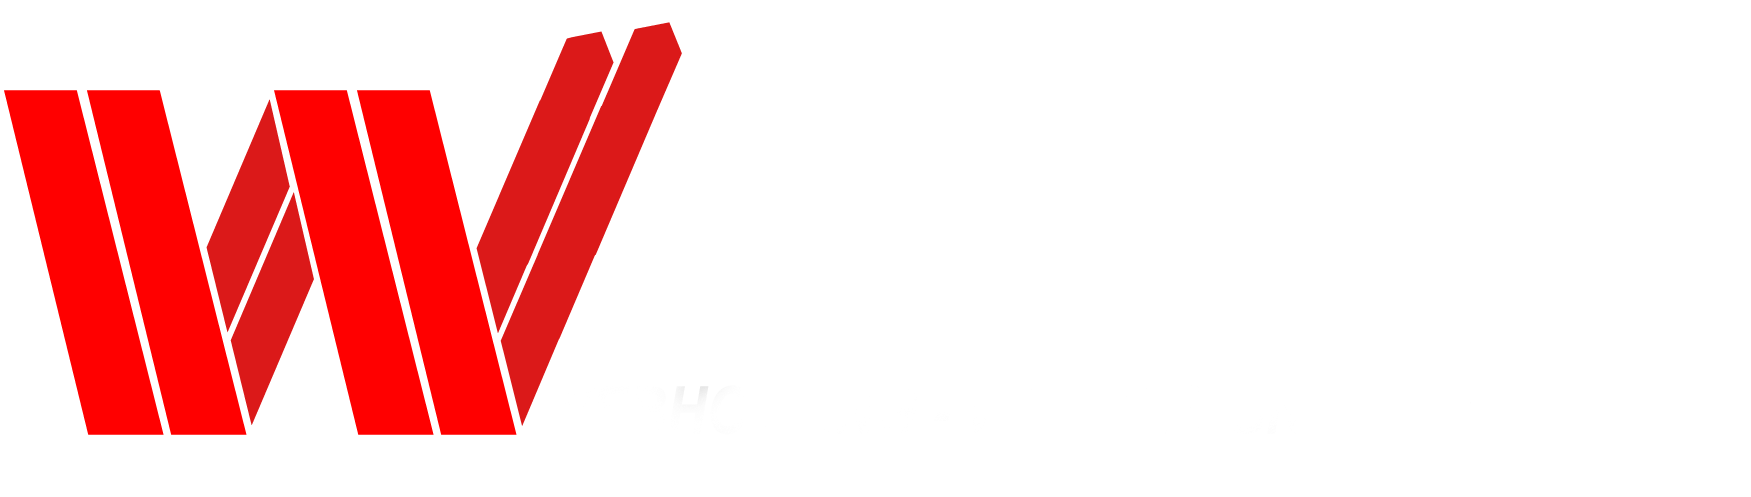 W-Hosting.eu - webhosting